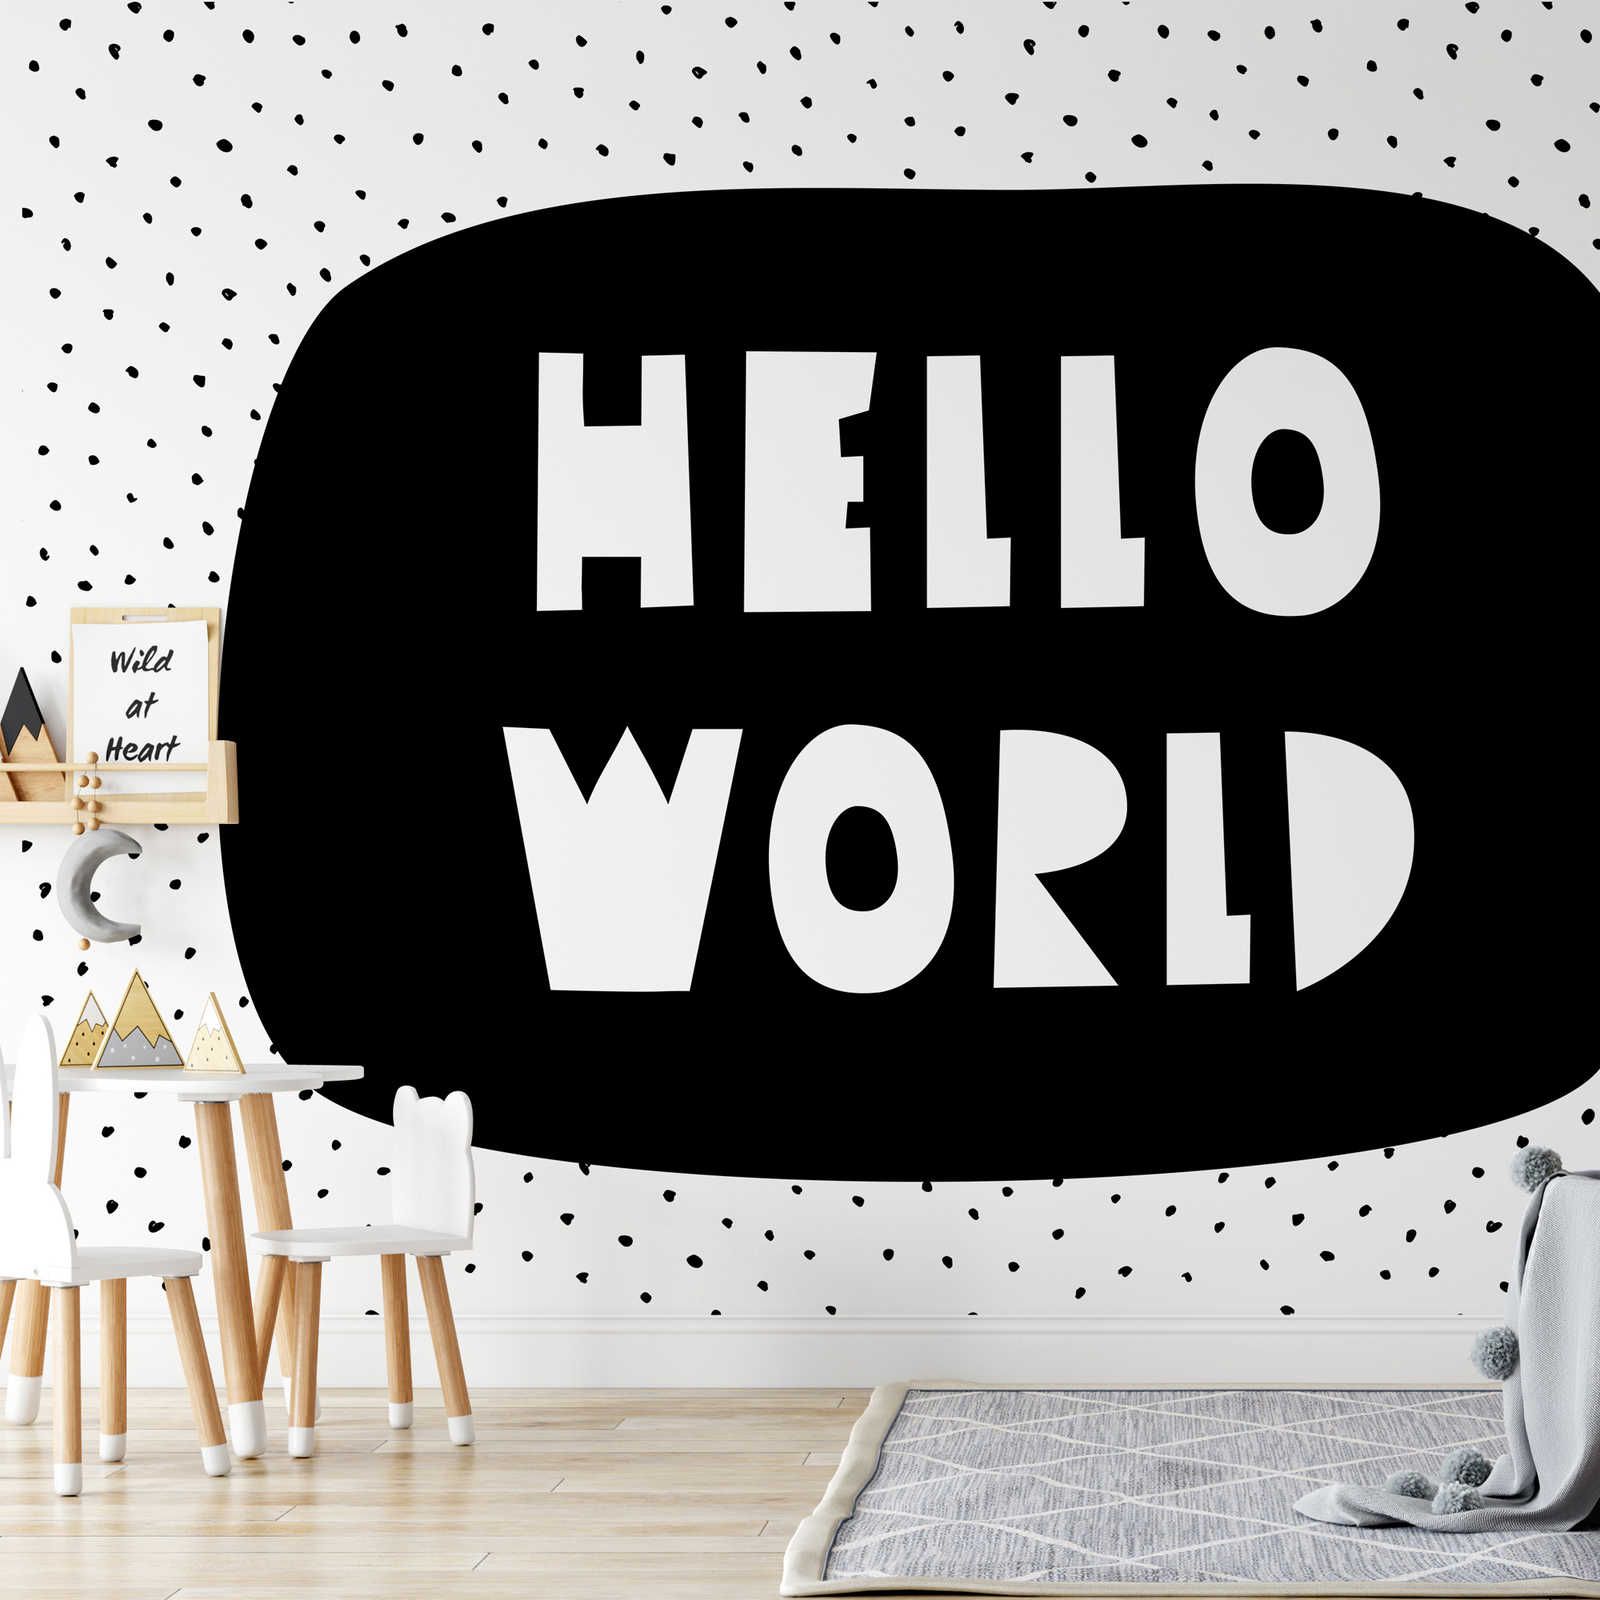 Digital behang voor kinderkamer met opschrift "Hello World" - Glad & licht glanzend vlies
